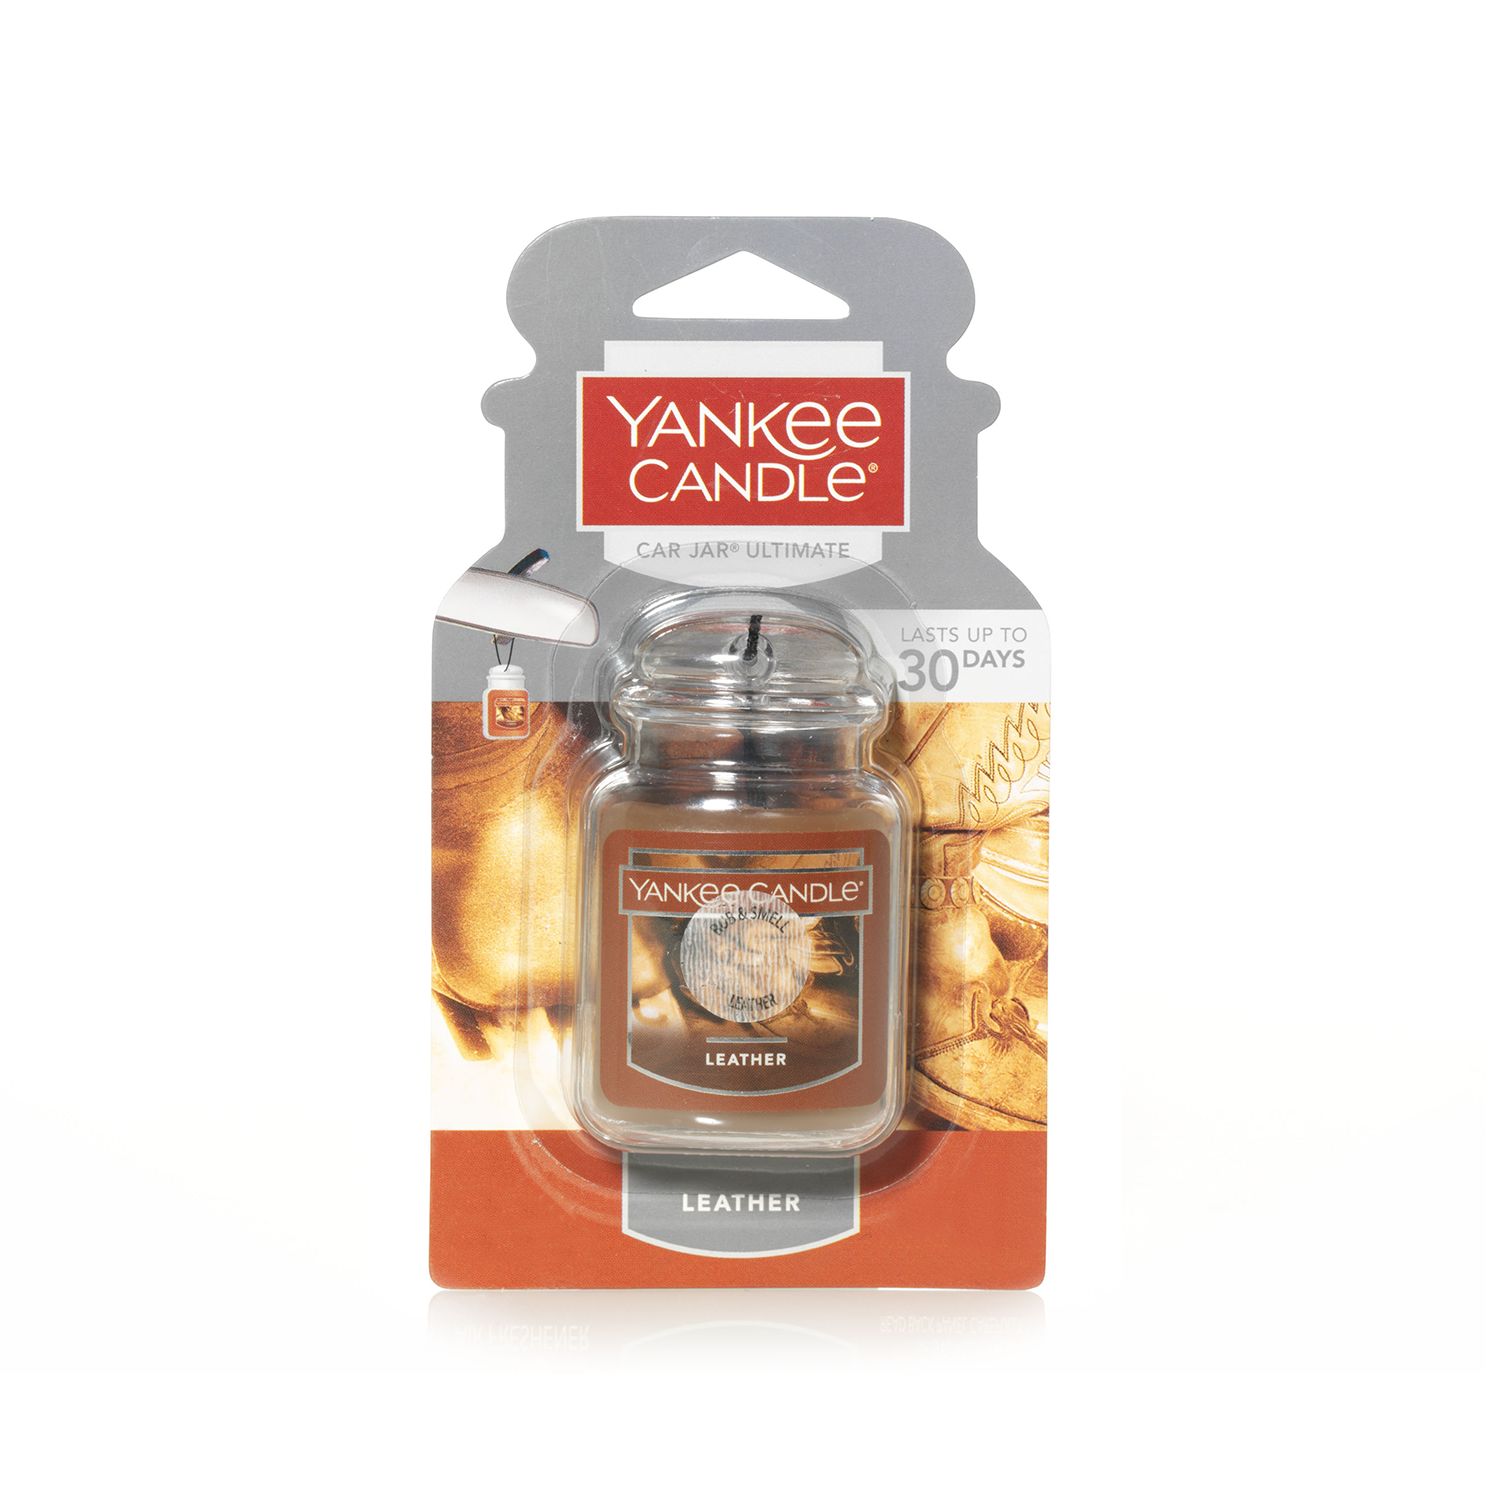 Yankee Candle Car Jar Ultimate Pink Sands Air Freshener, 1 ct - Food 4 Less